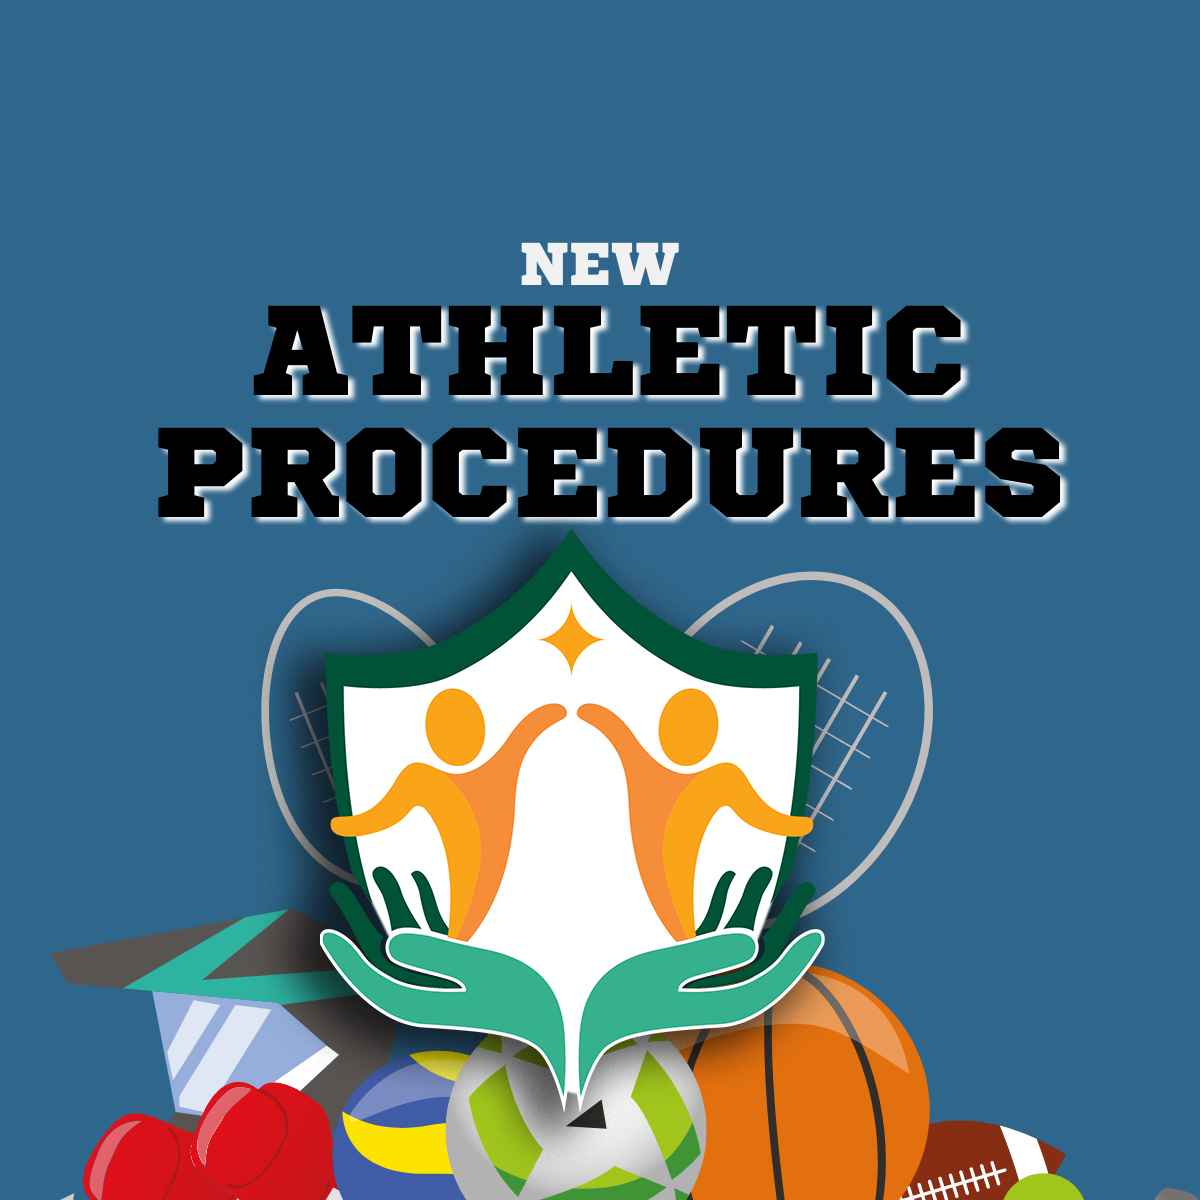 New Athletic Procedures